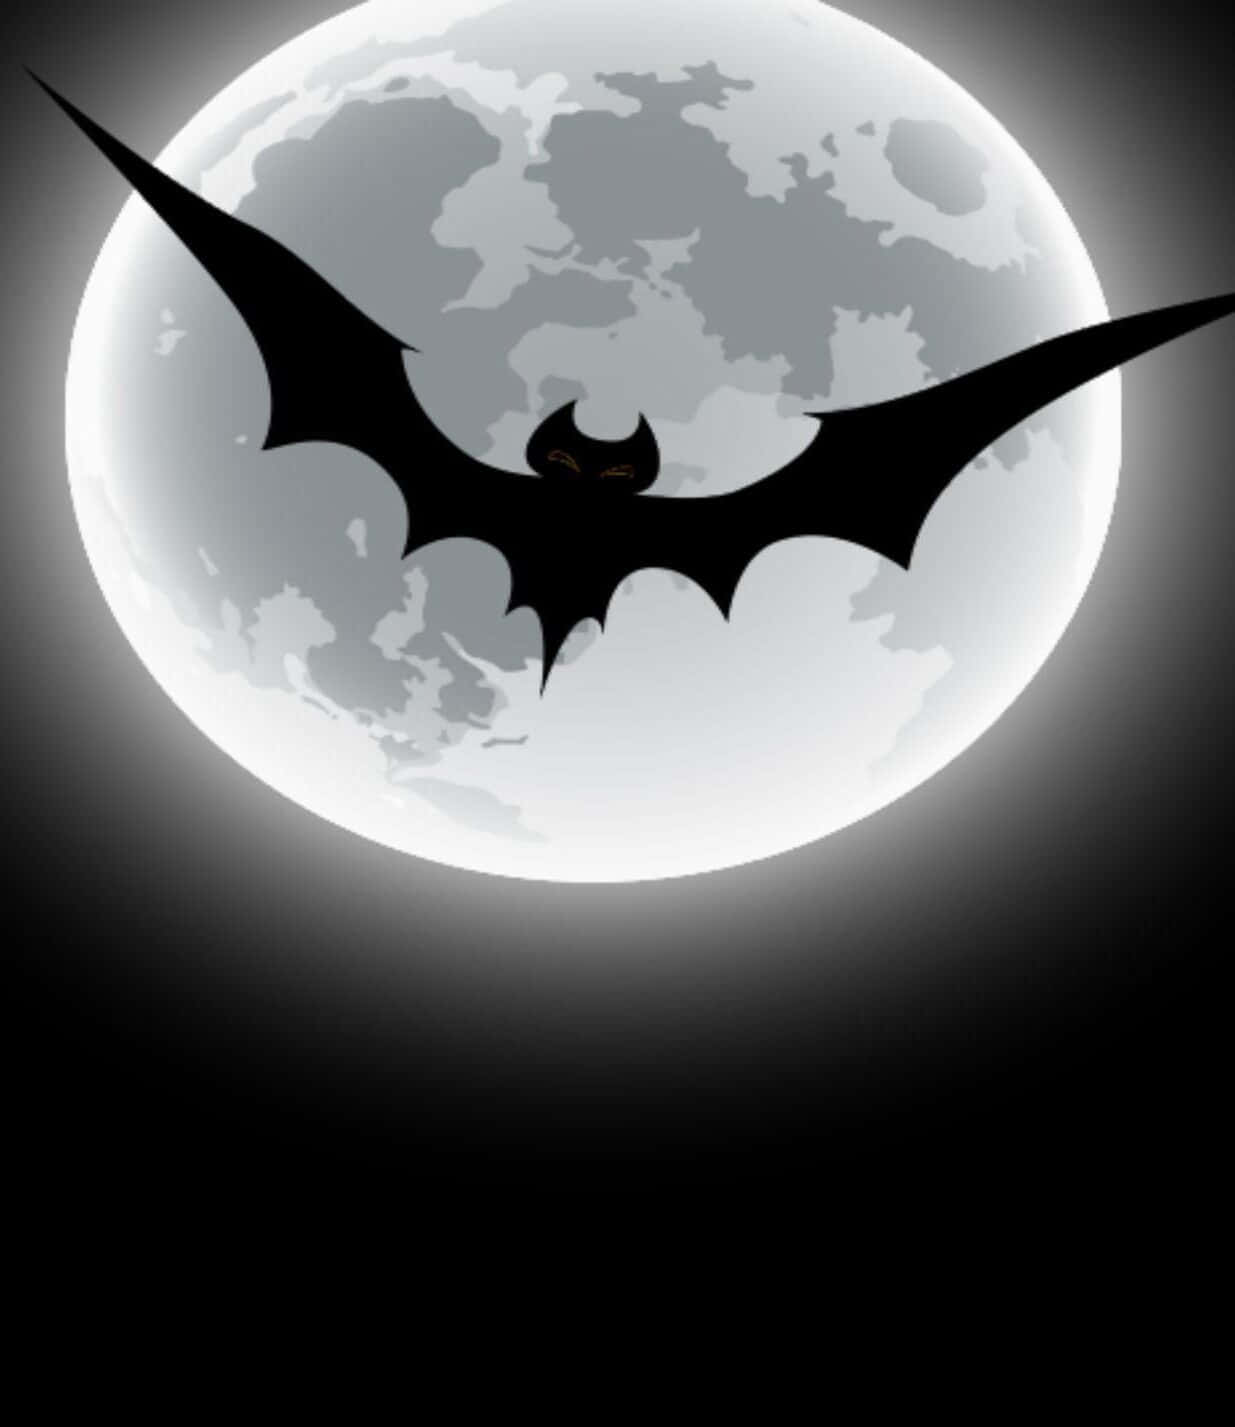 Bat Wallpaper Images  Free Download on Freepik